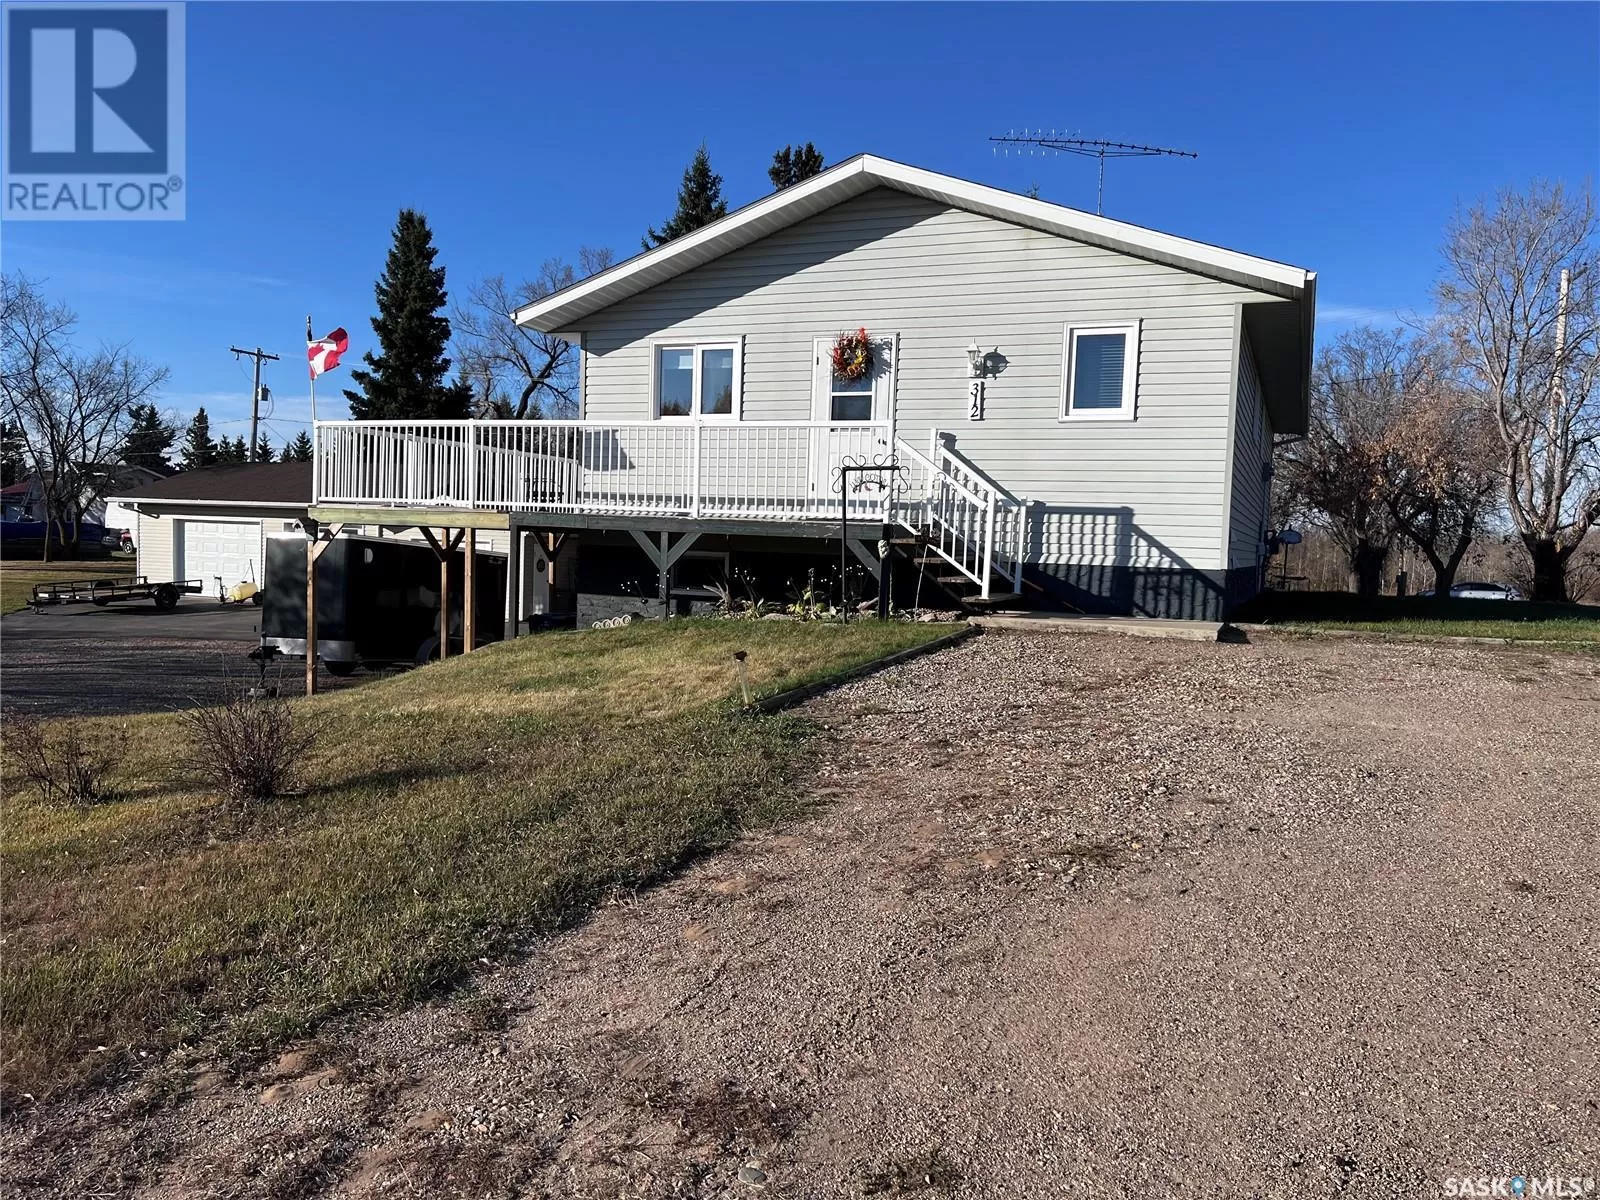 House for rent: 312 1st Avenue, Mervin, Saskatchewan S0M 1Y0